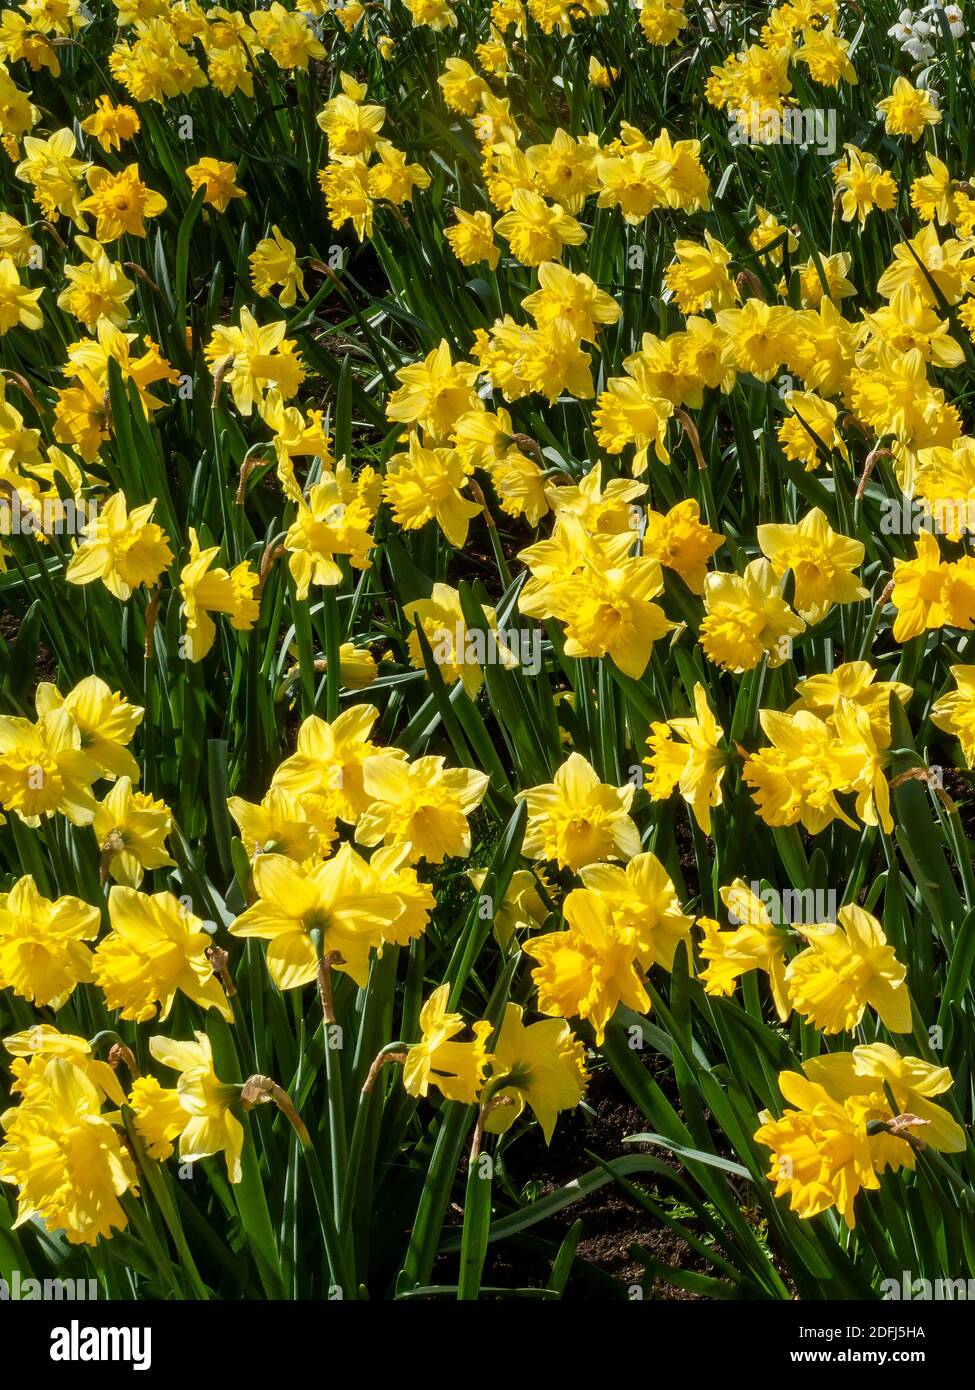 Jonquilles (narcisse) plante à bulbe de fleurs jaunes au printemps qui  pousse à l'extérieur dans un parc public pendant la saison du printemps,  photo de stock Photo Stock - Alamy